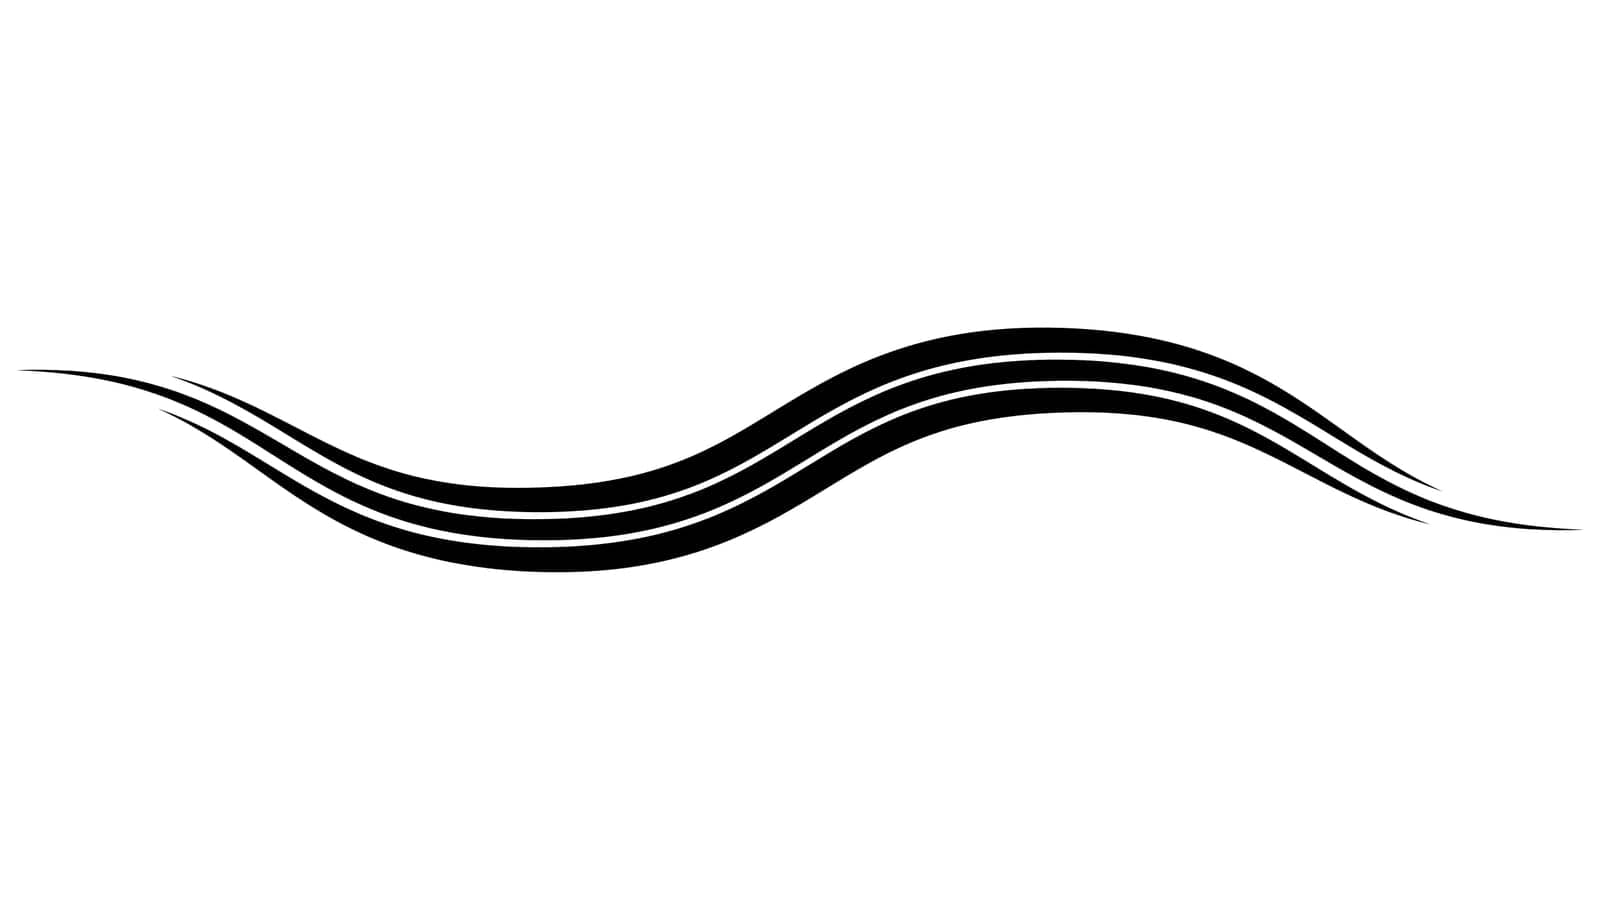 Triple curved wavy line swoosh on swish, logo strip